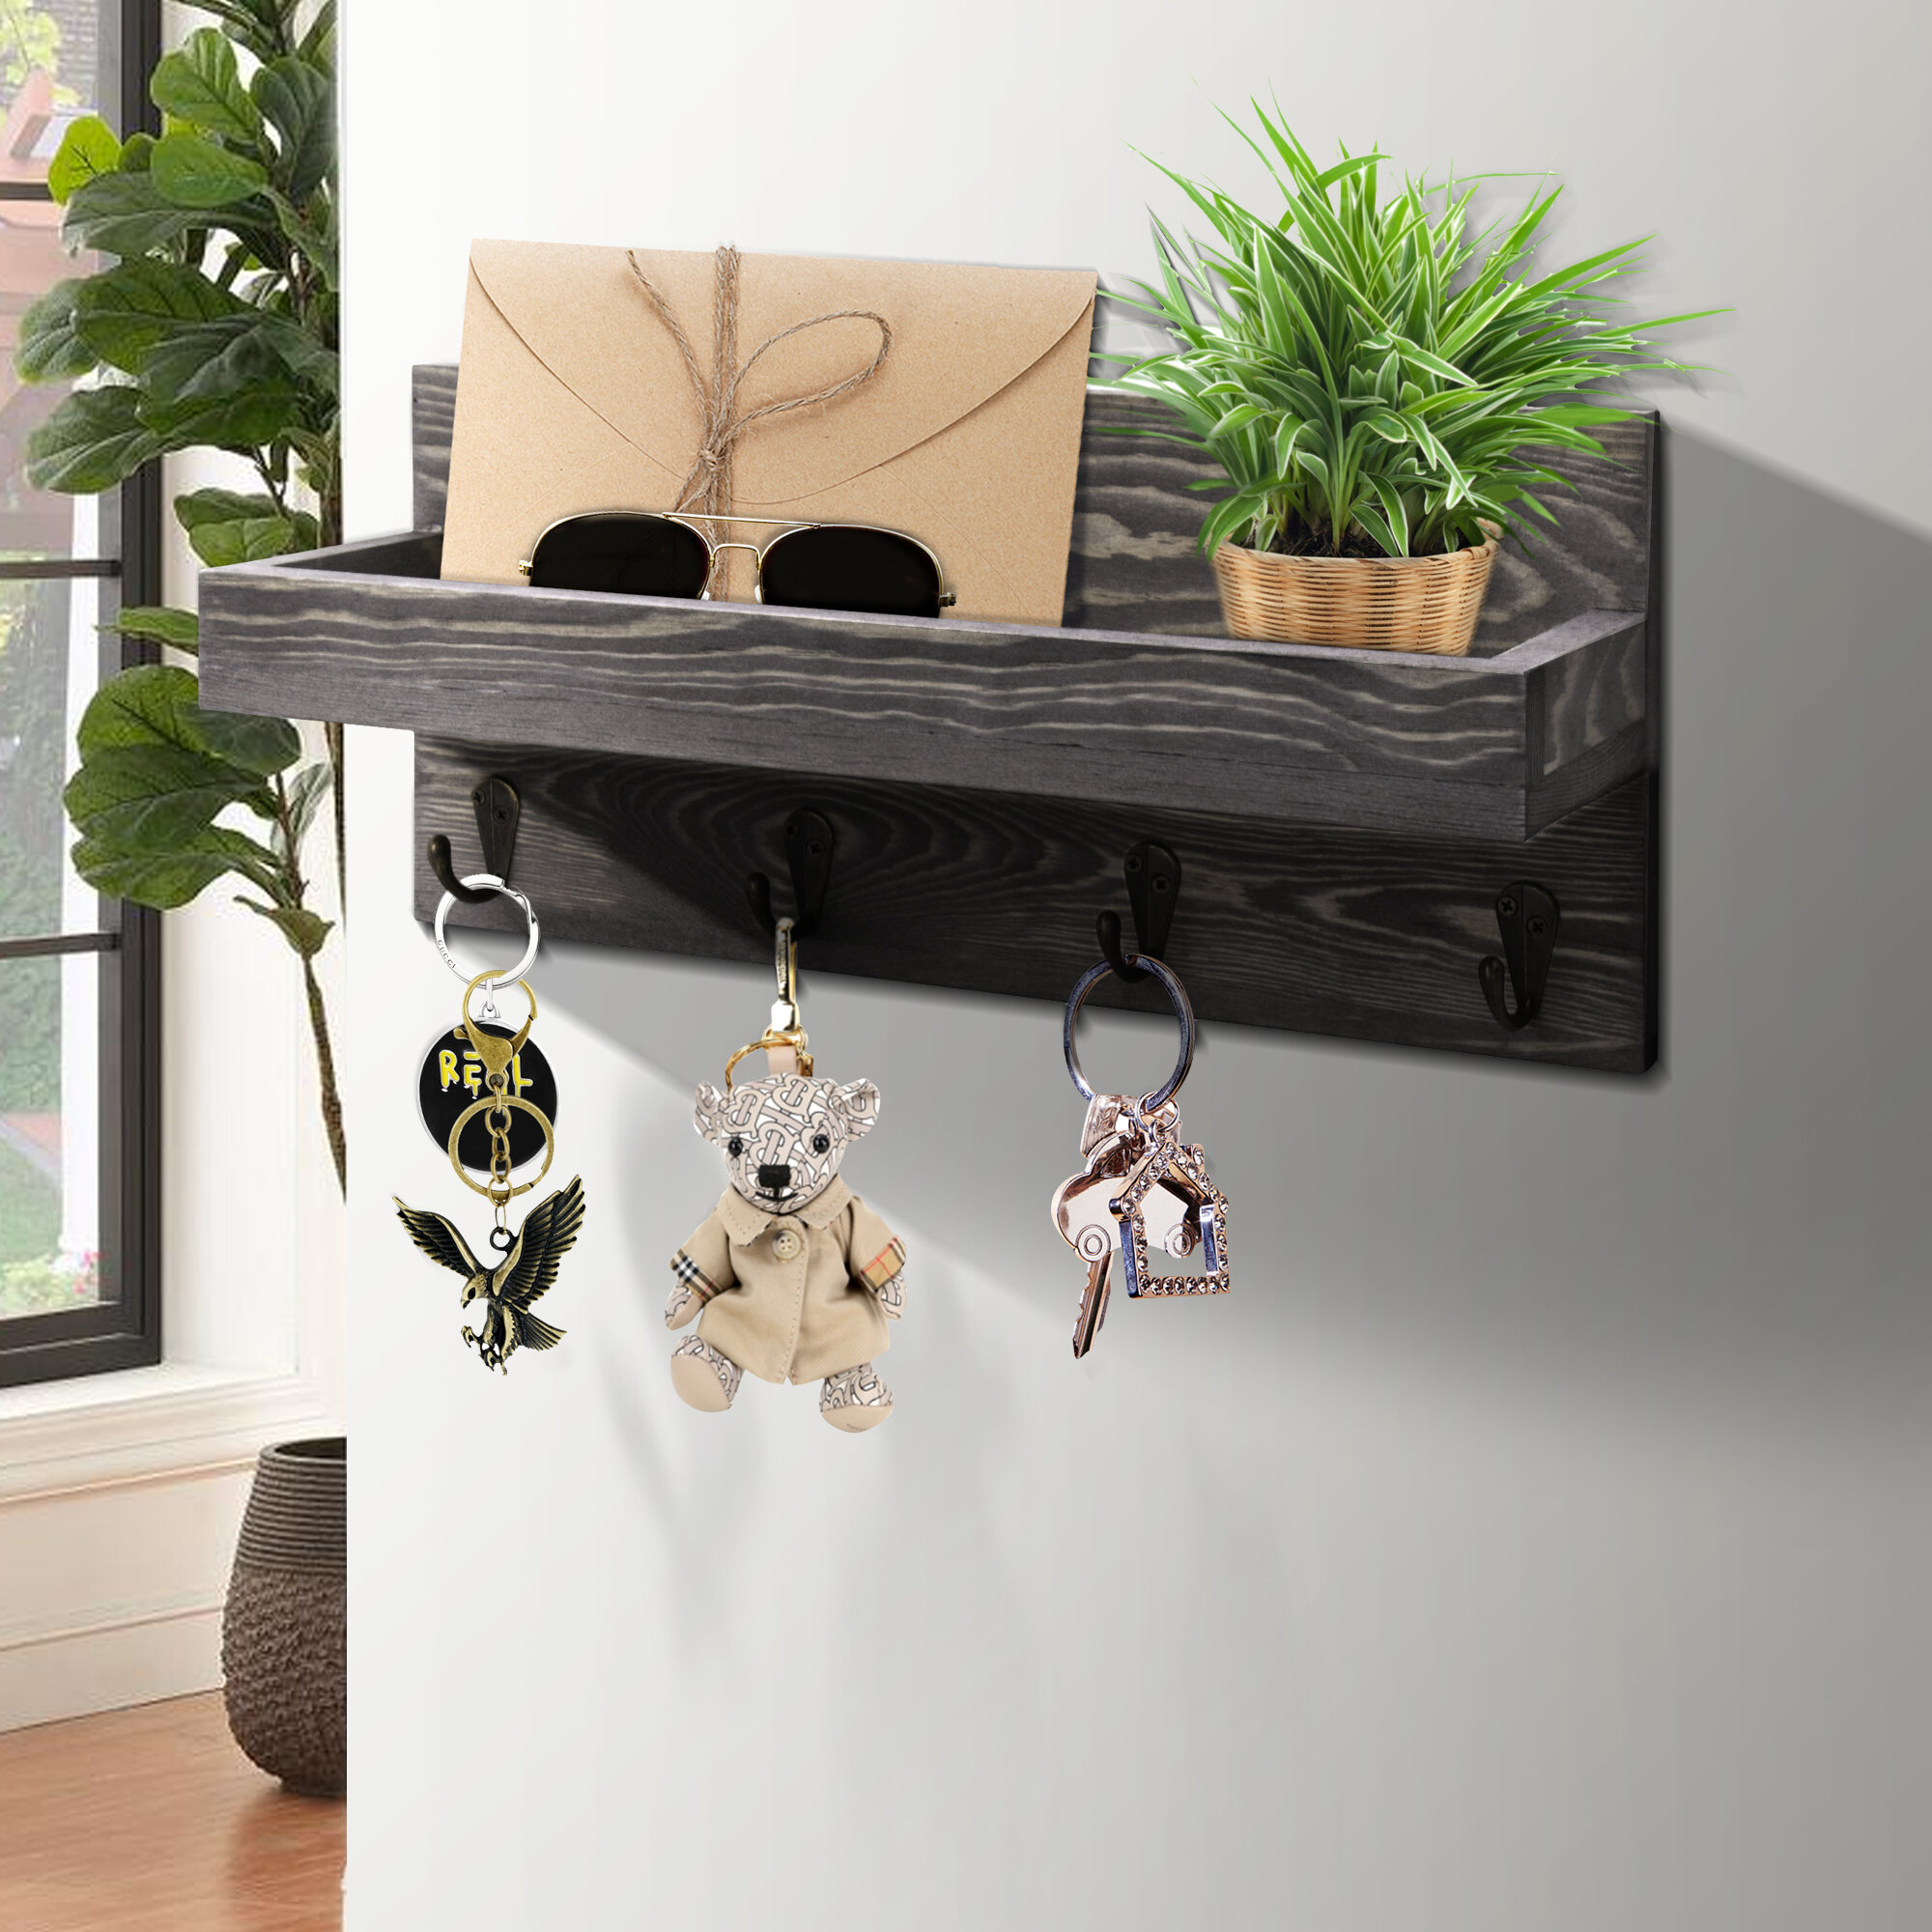 wall mounted Key Hanger With Shelf 